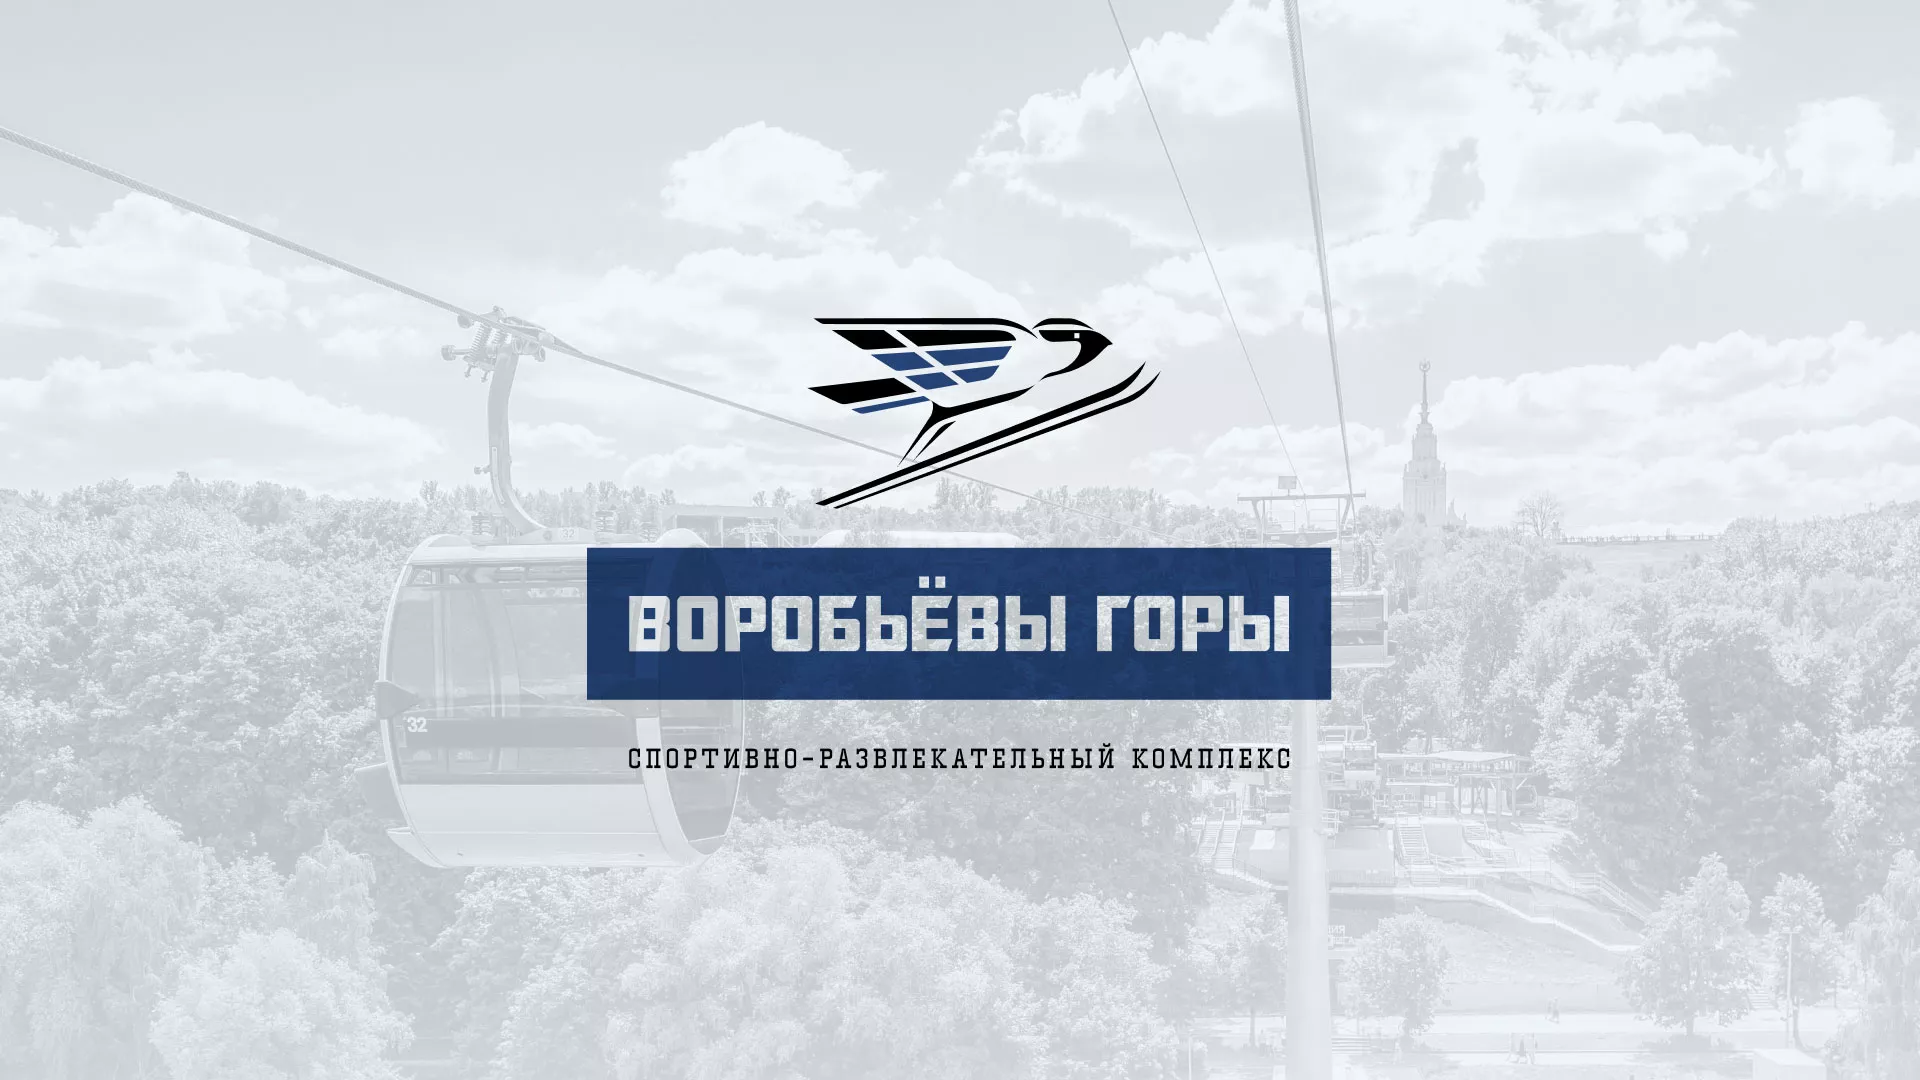 Разработка сайта в Климовске для спортивно-развлекательного комплекса «Воробьёвы горы»